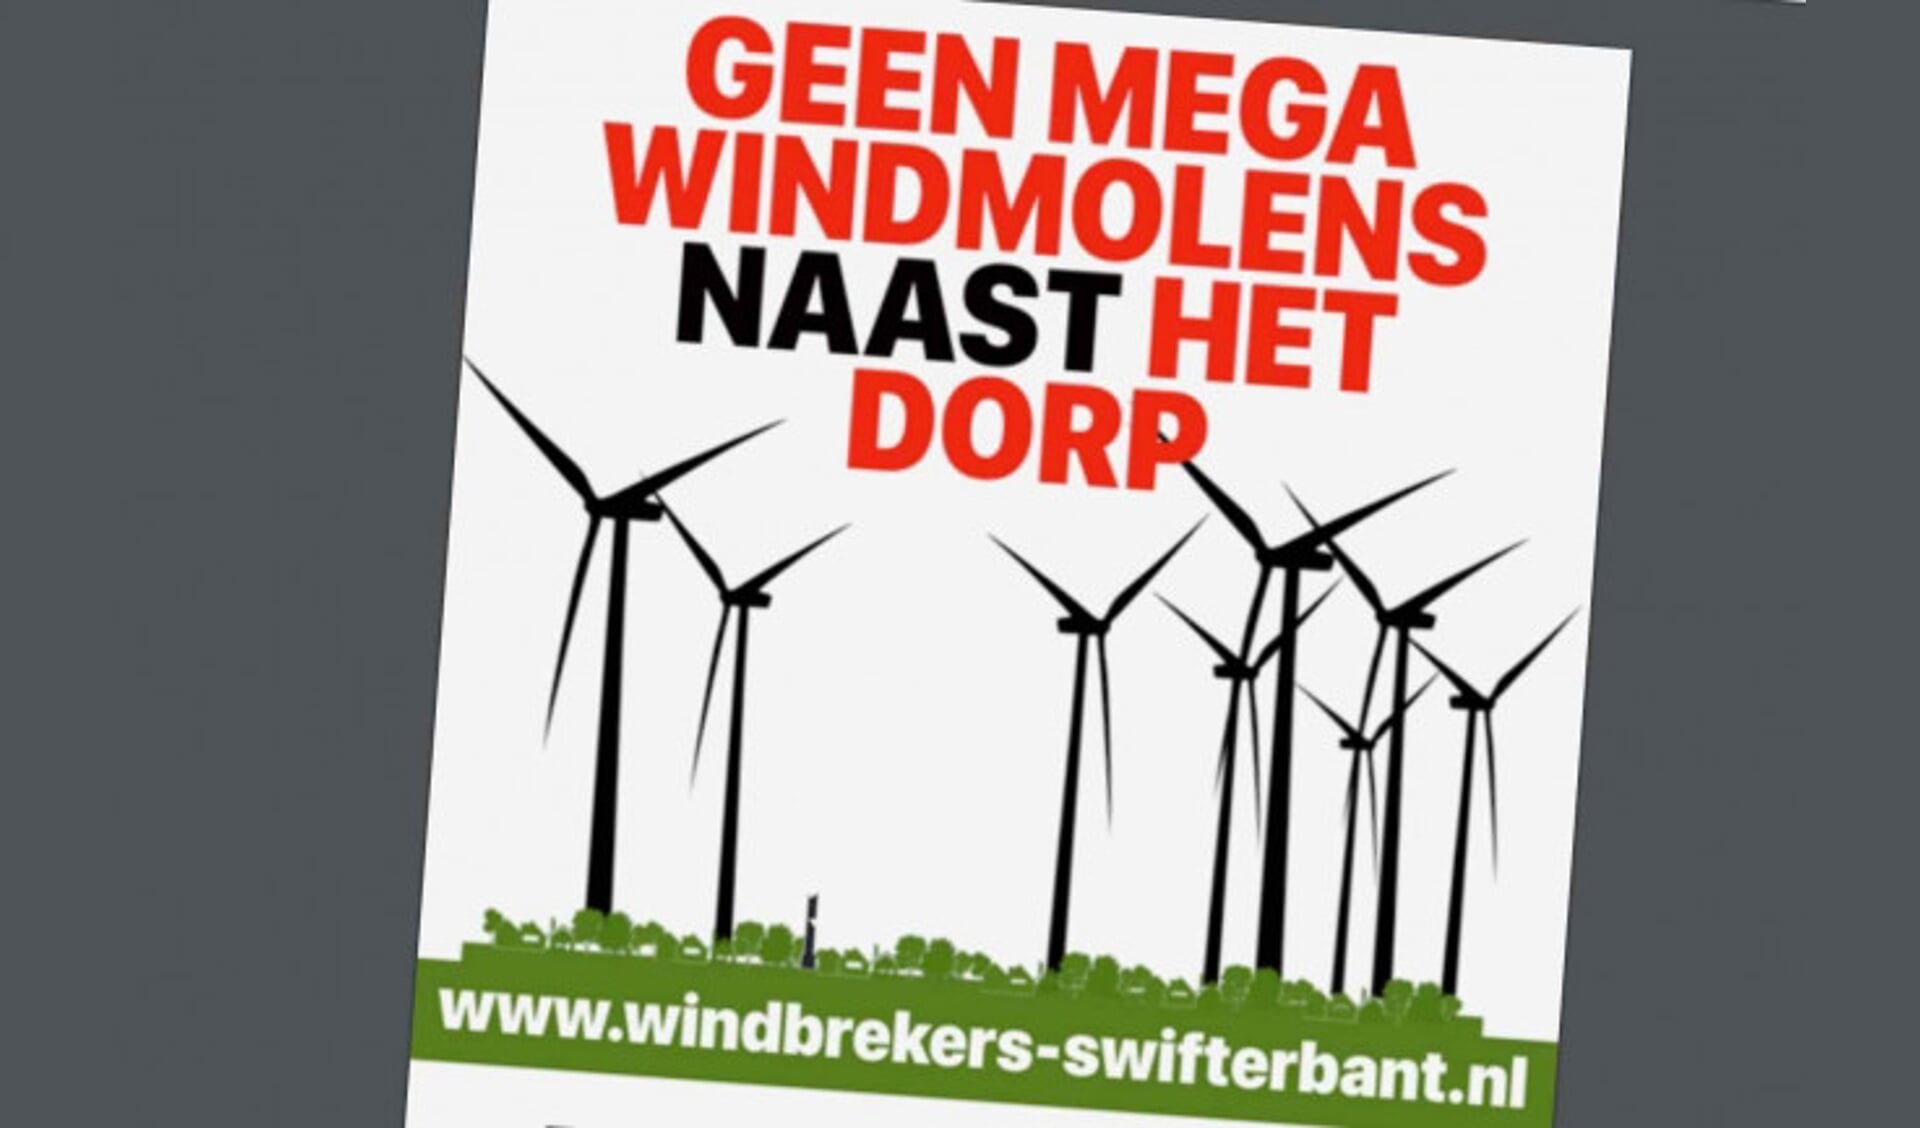  Flyer van De Windbrekers